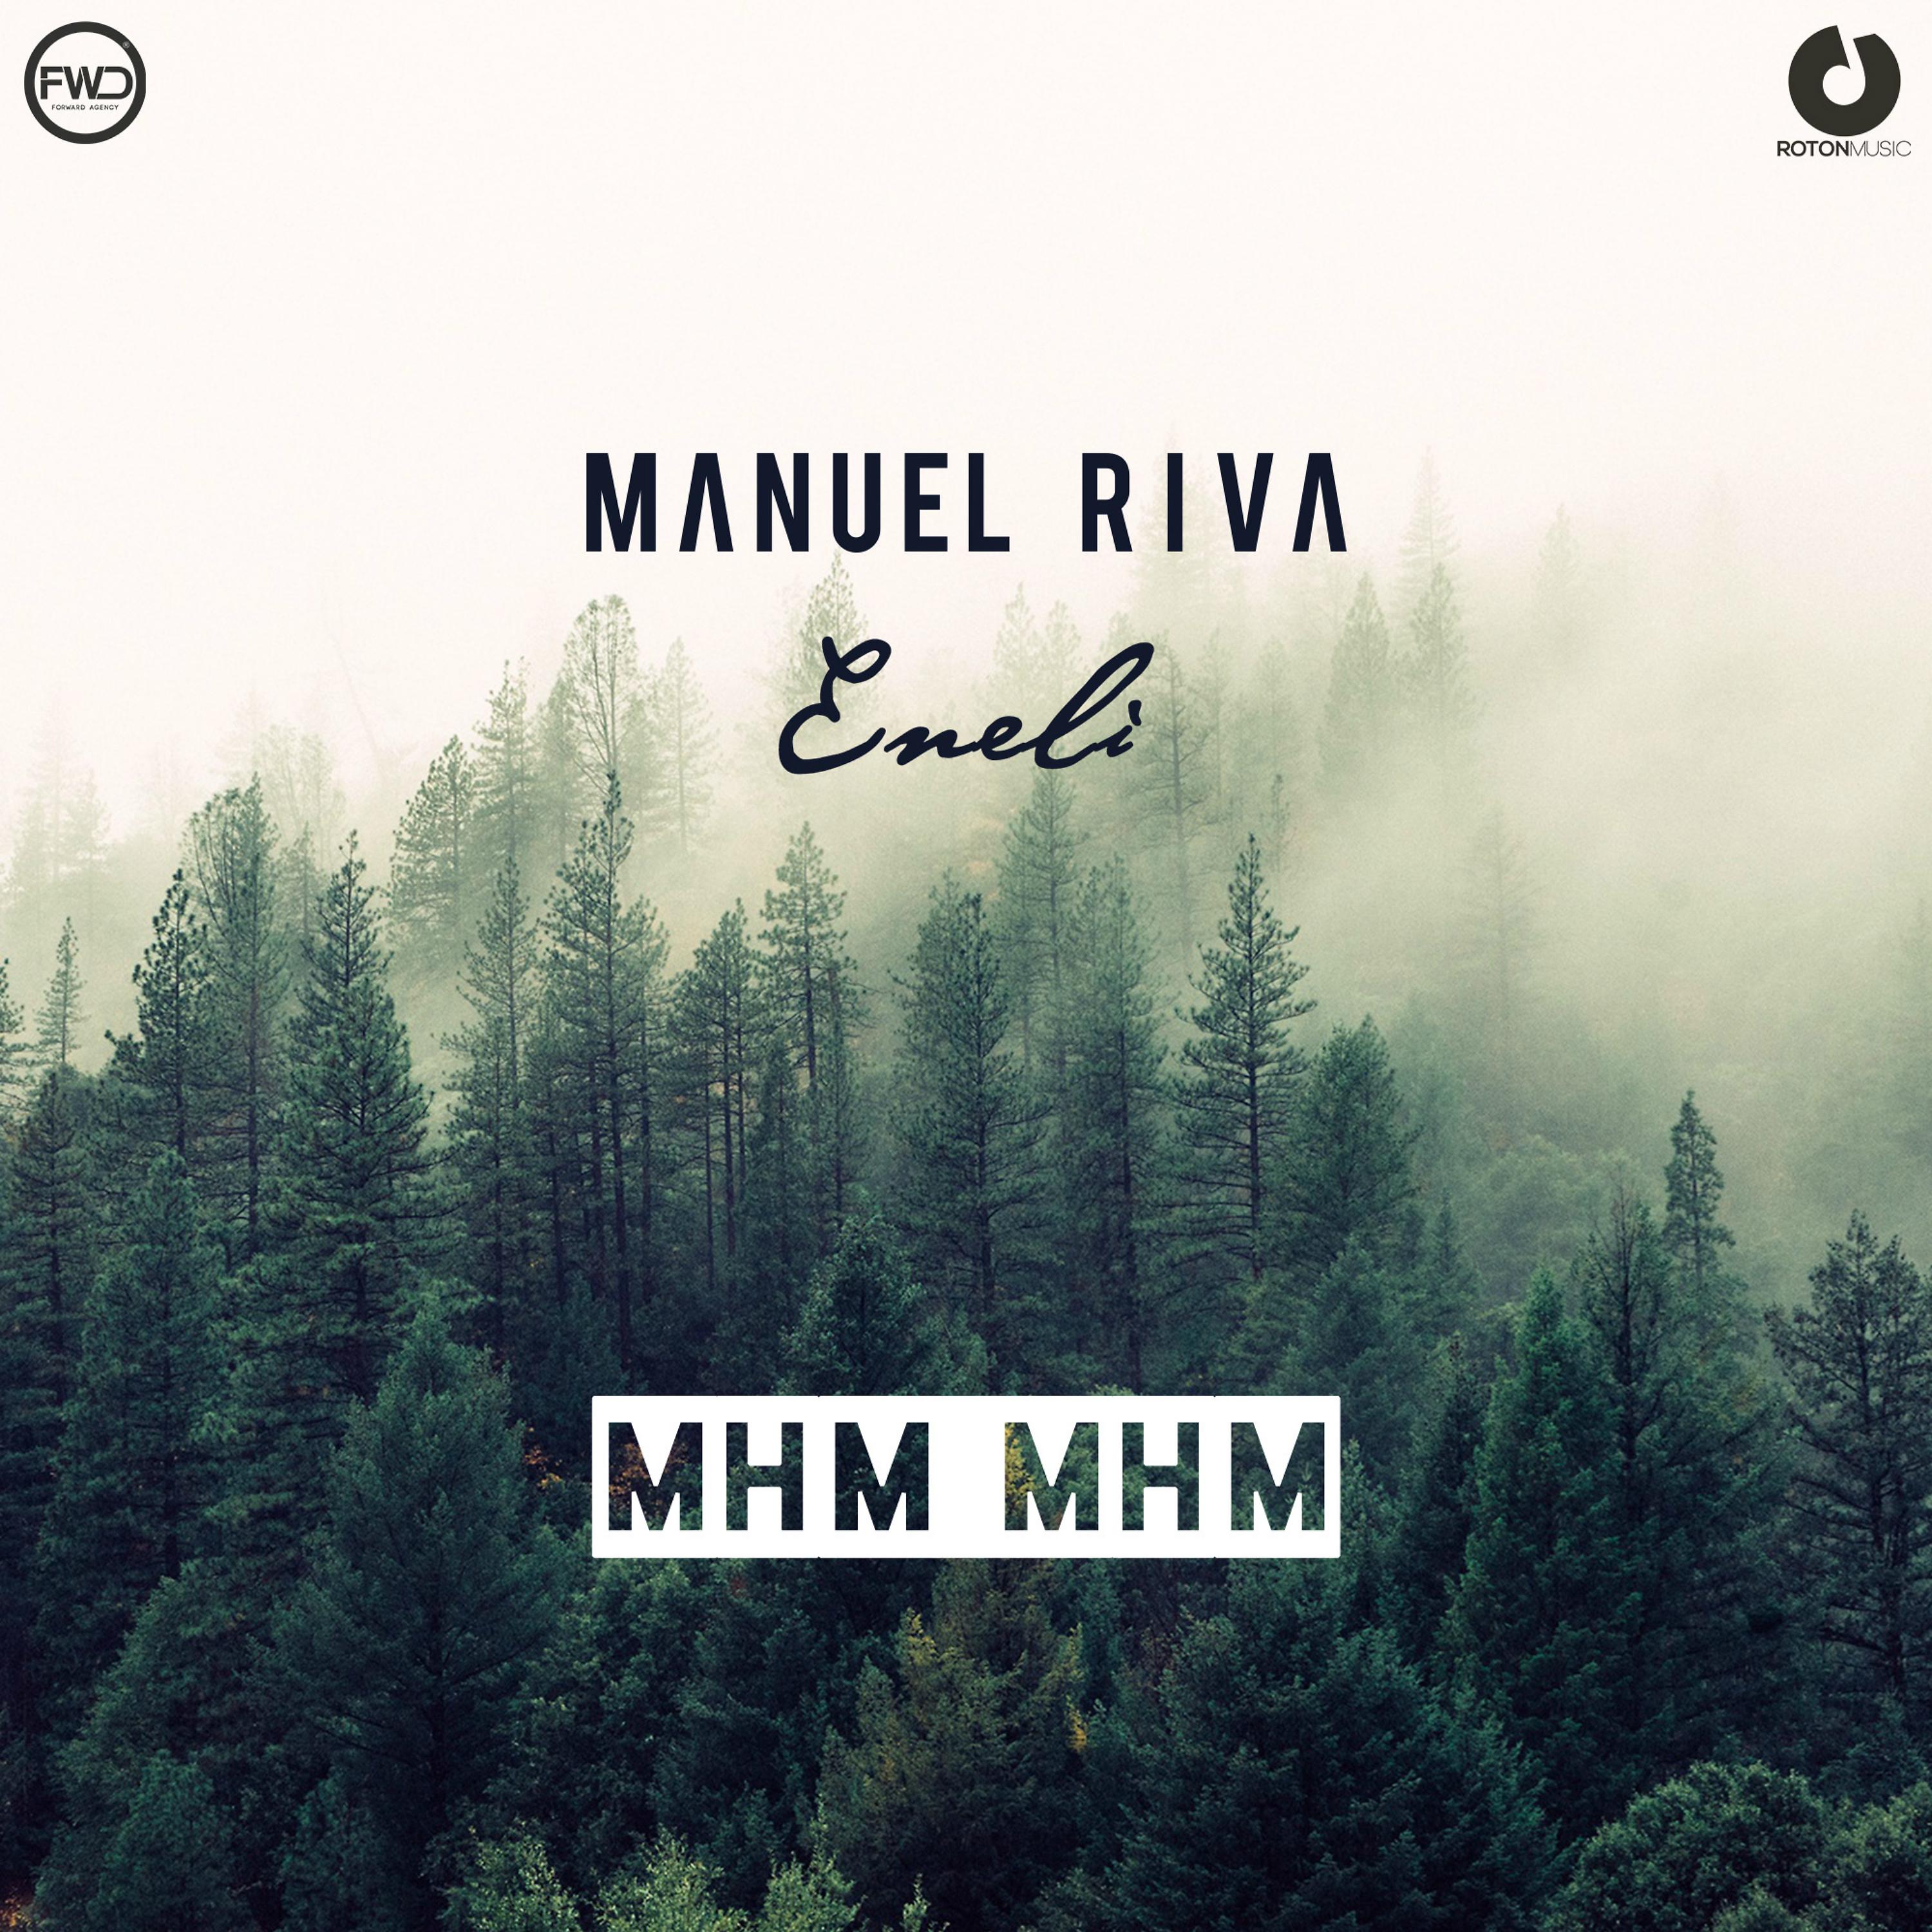 Manuel Riva, Eneli - Mhm Mhm (Radio Edit)